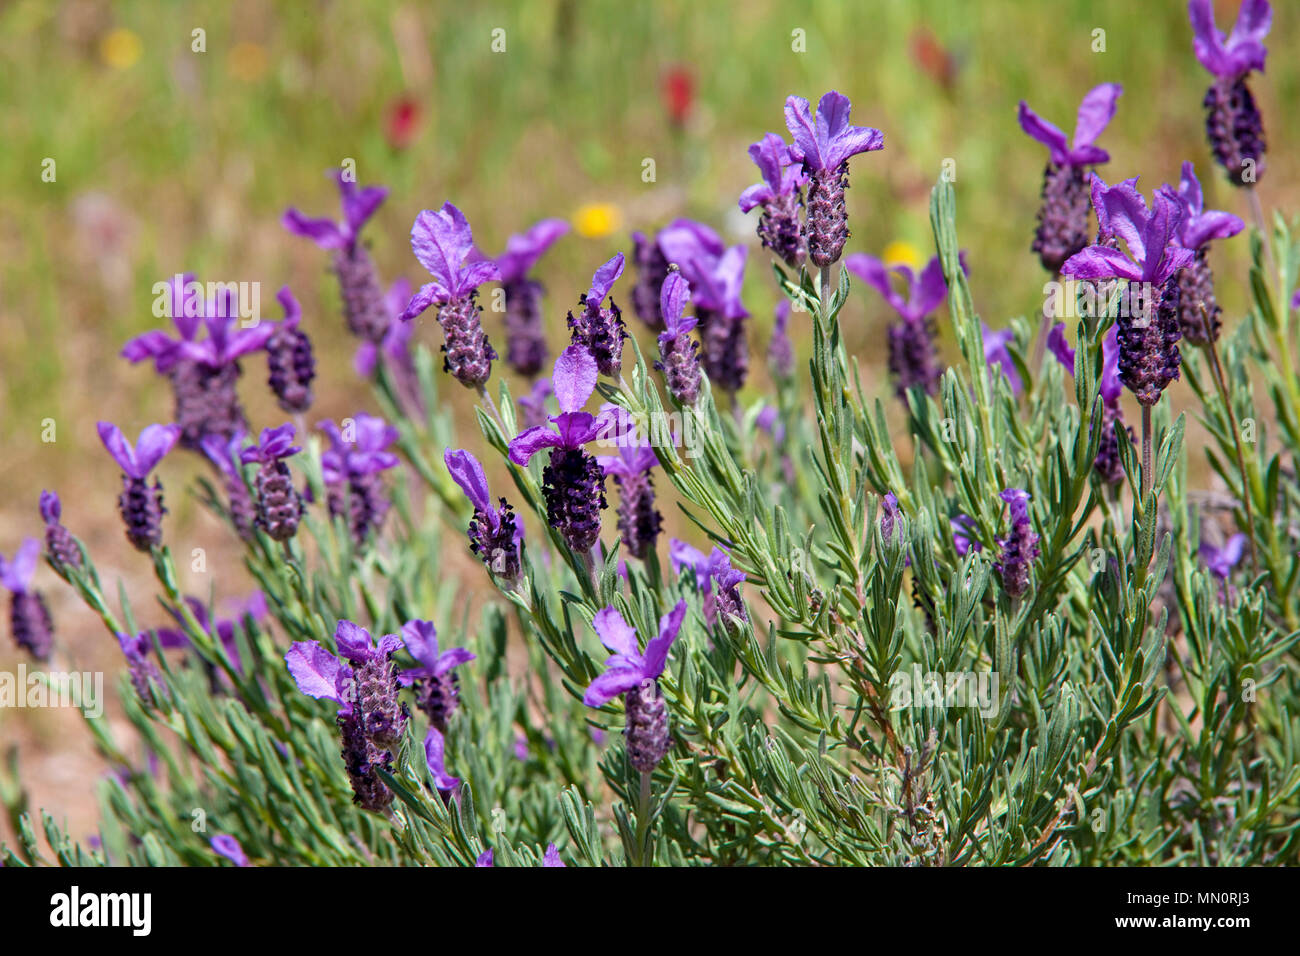 Lavendel (Lavandula angustifolia), la floraison, Cap Camarat, Golfe de Saint-Tropez, Côte d'Azur, département du Var, Provence-Alpes-Côte d'Azur, sud Franc Banque D'Images